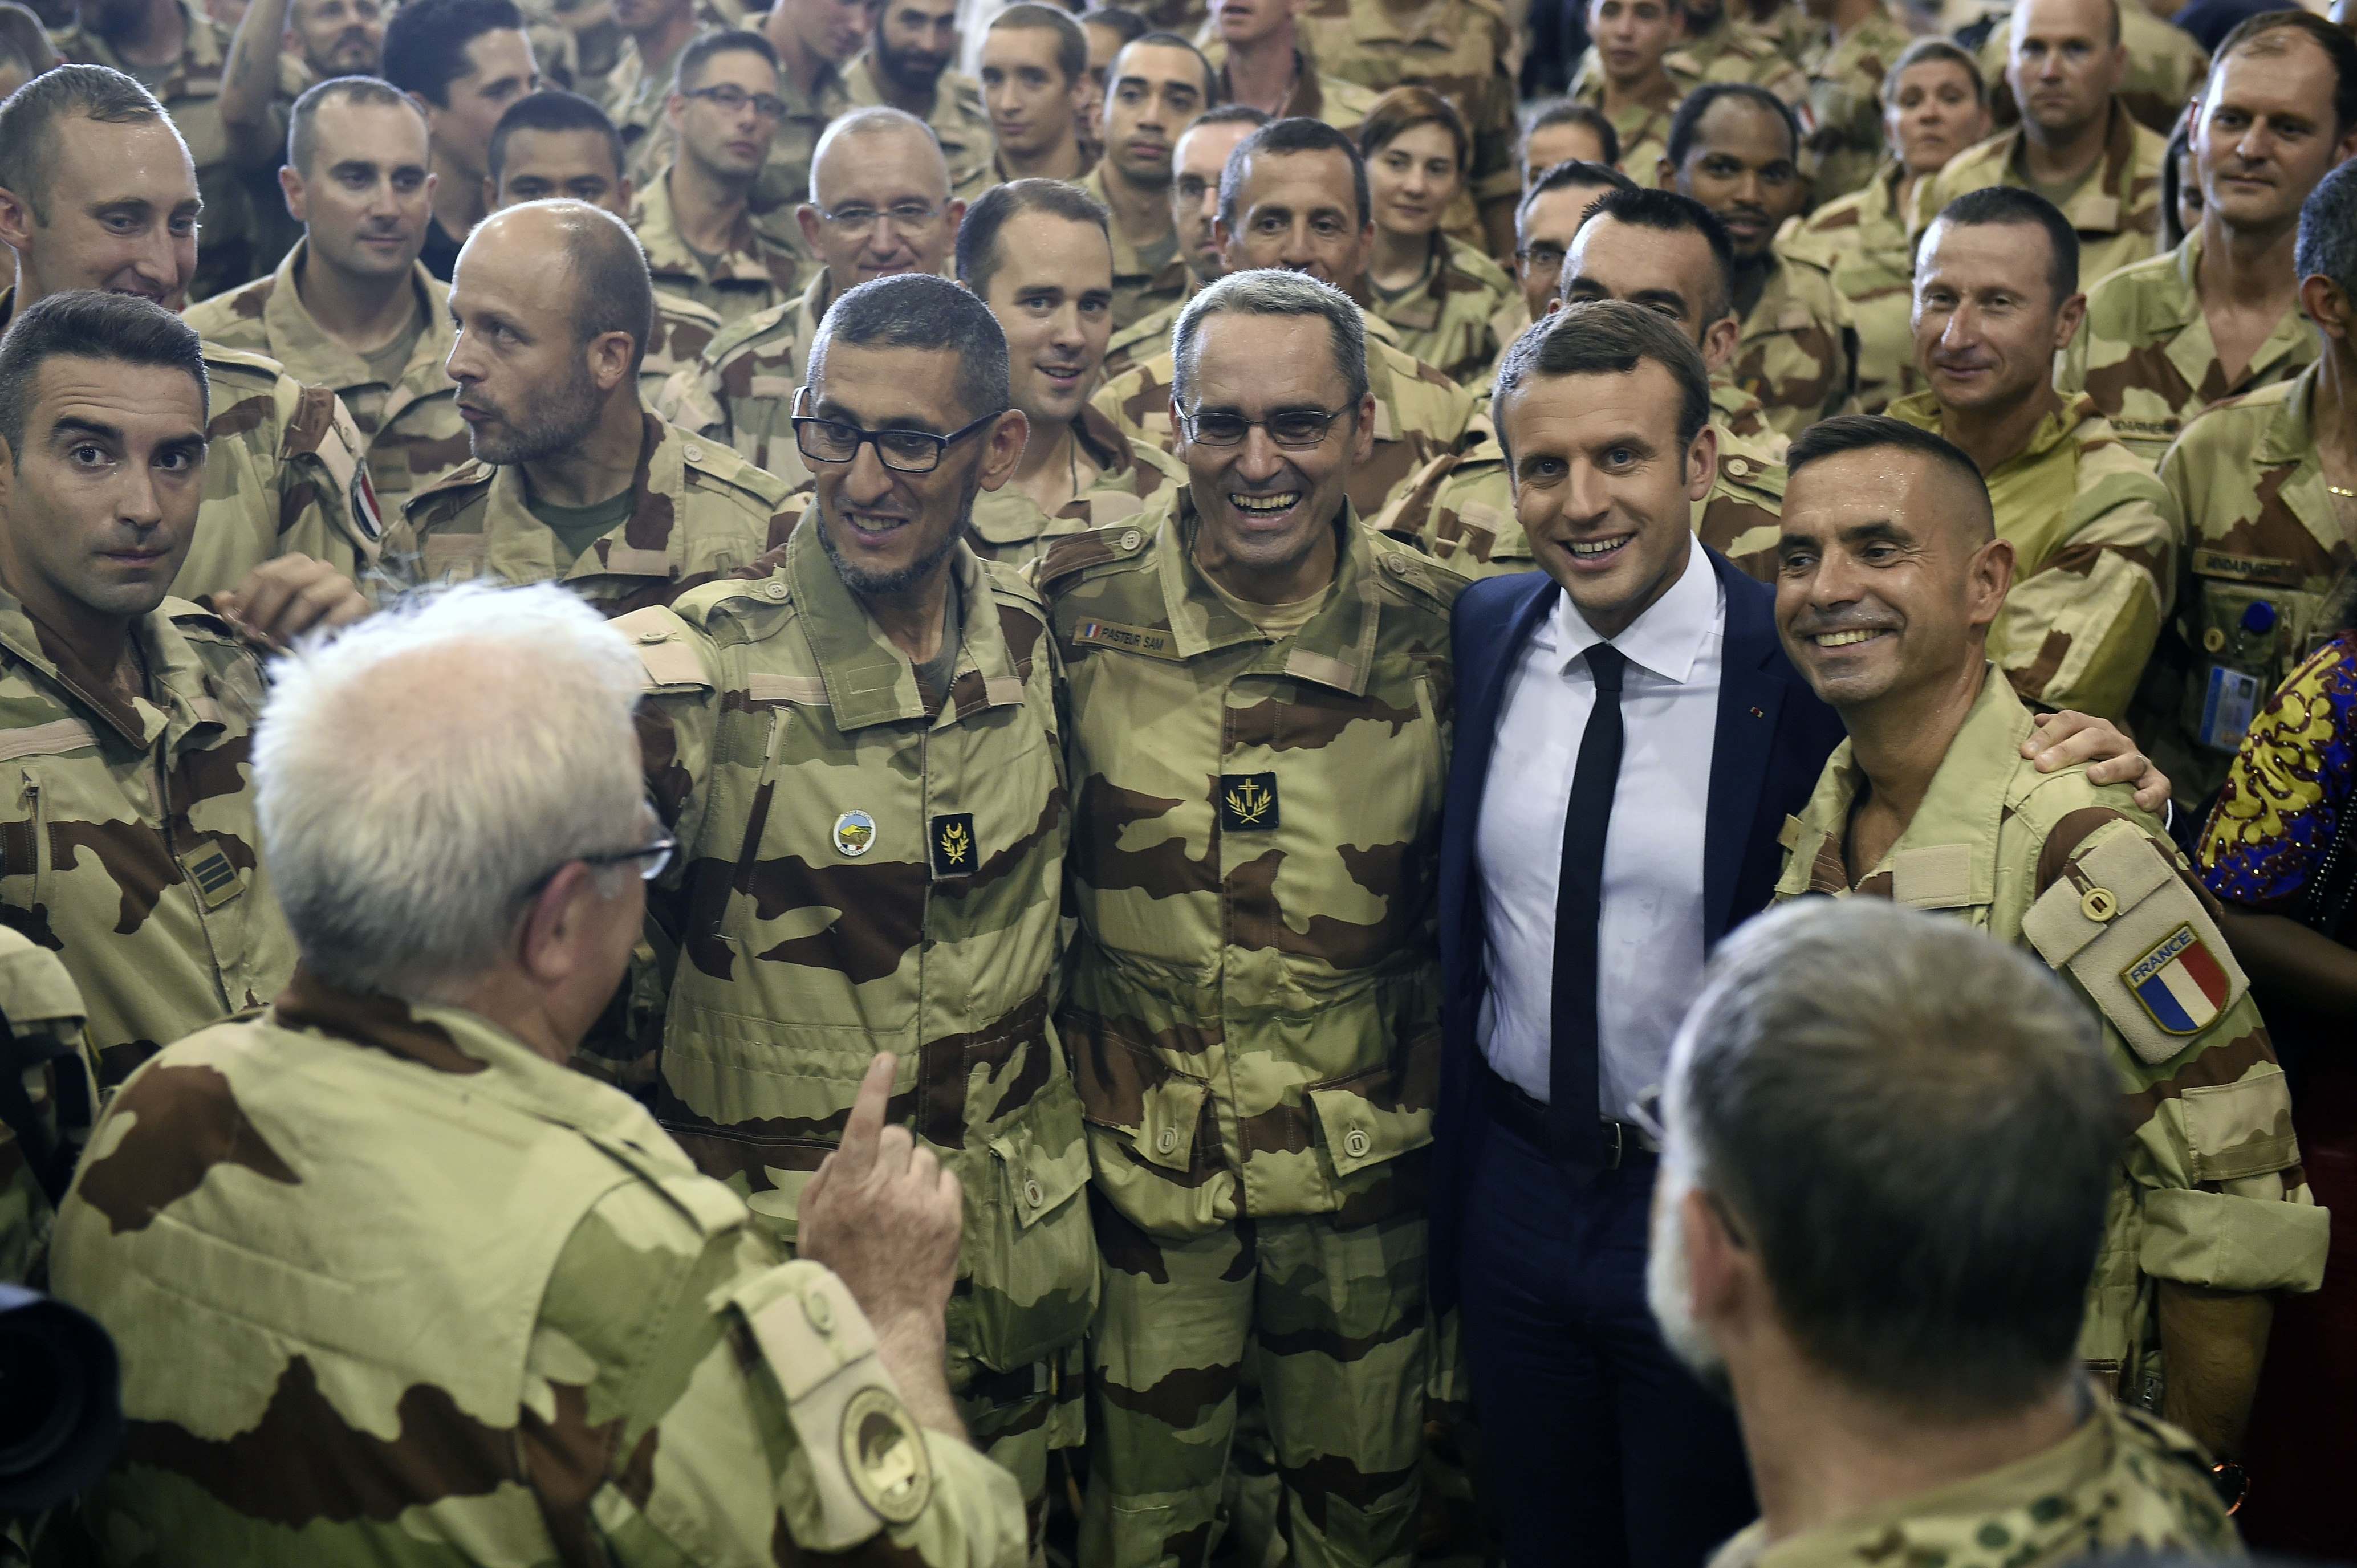 الرئيس الفرنسي يتوسط جنود من الجيش